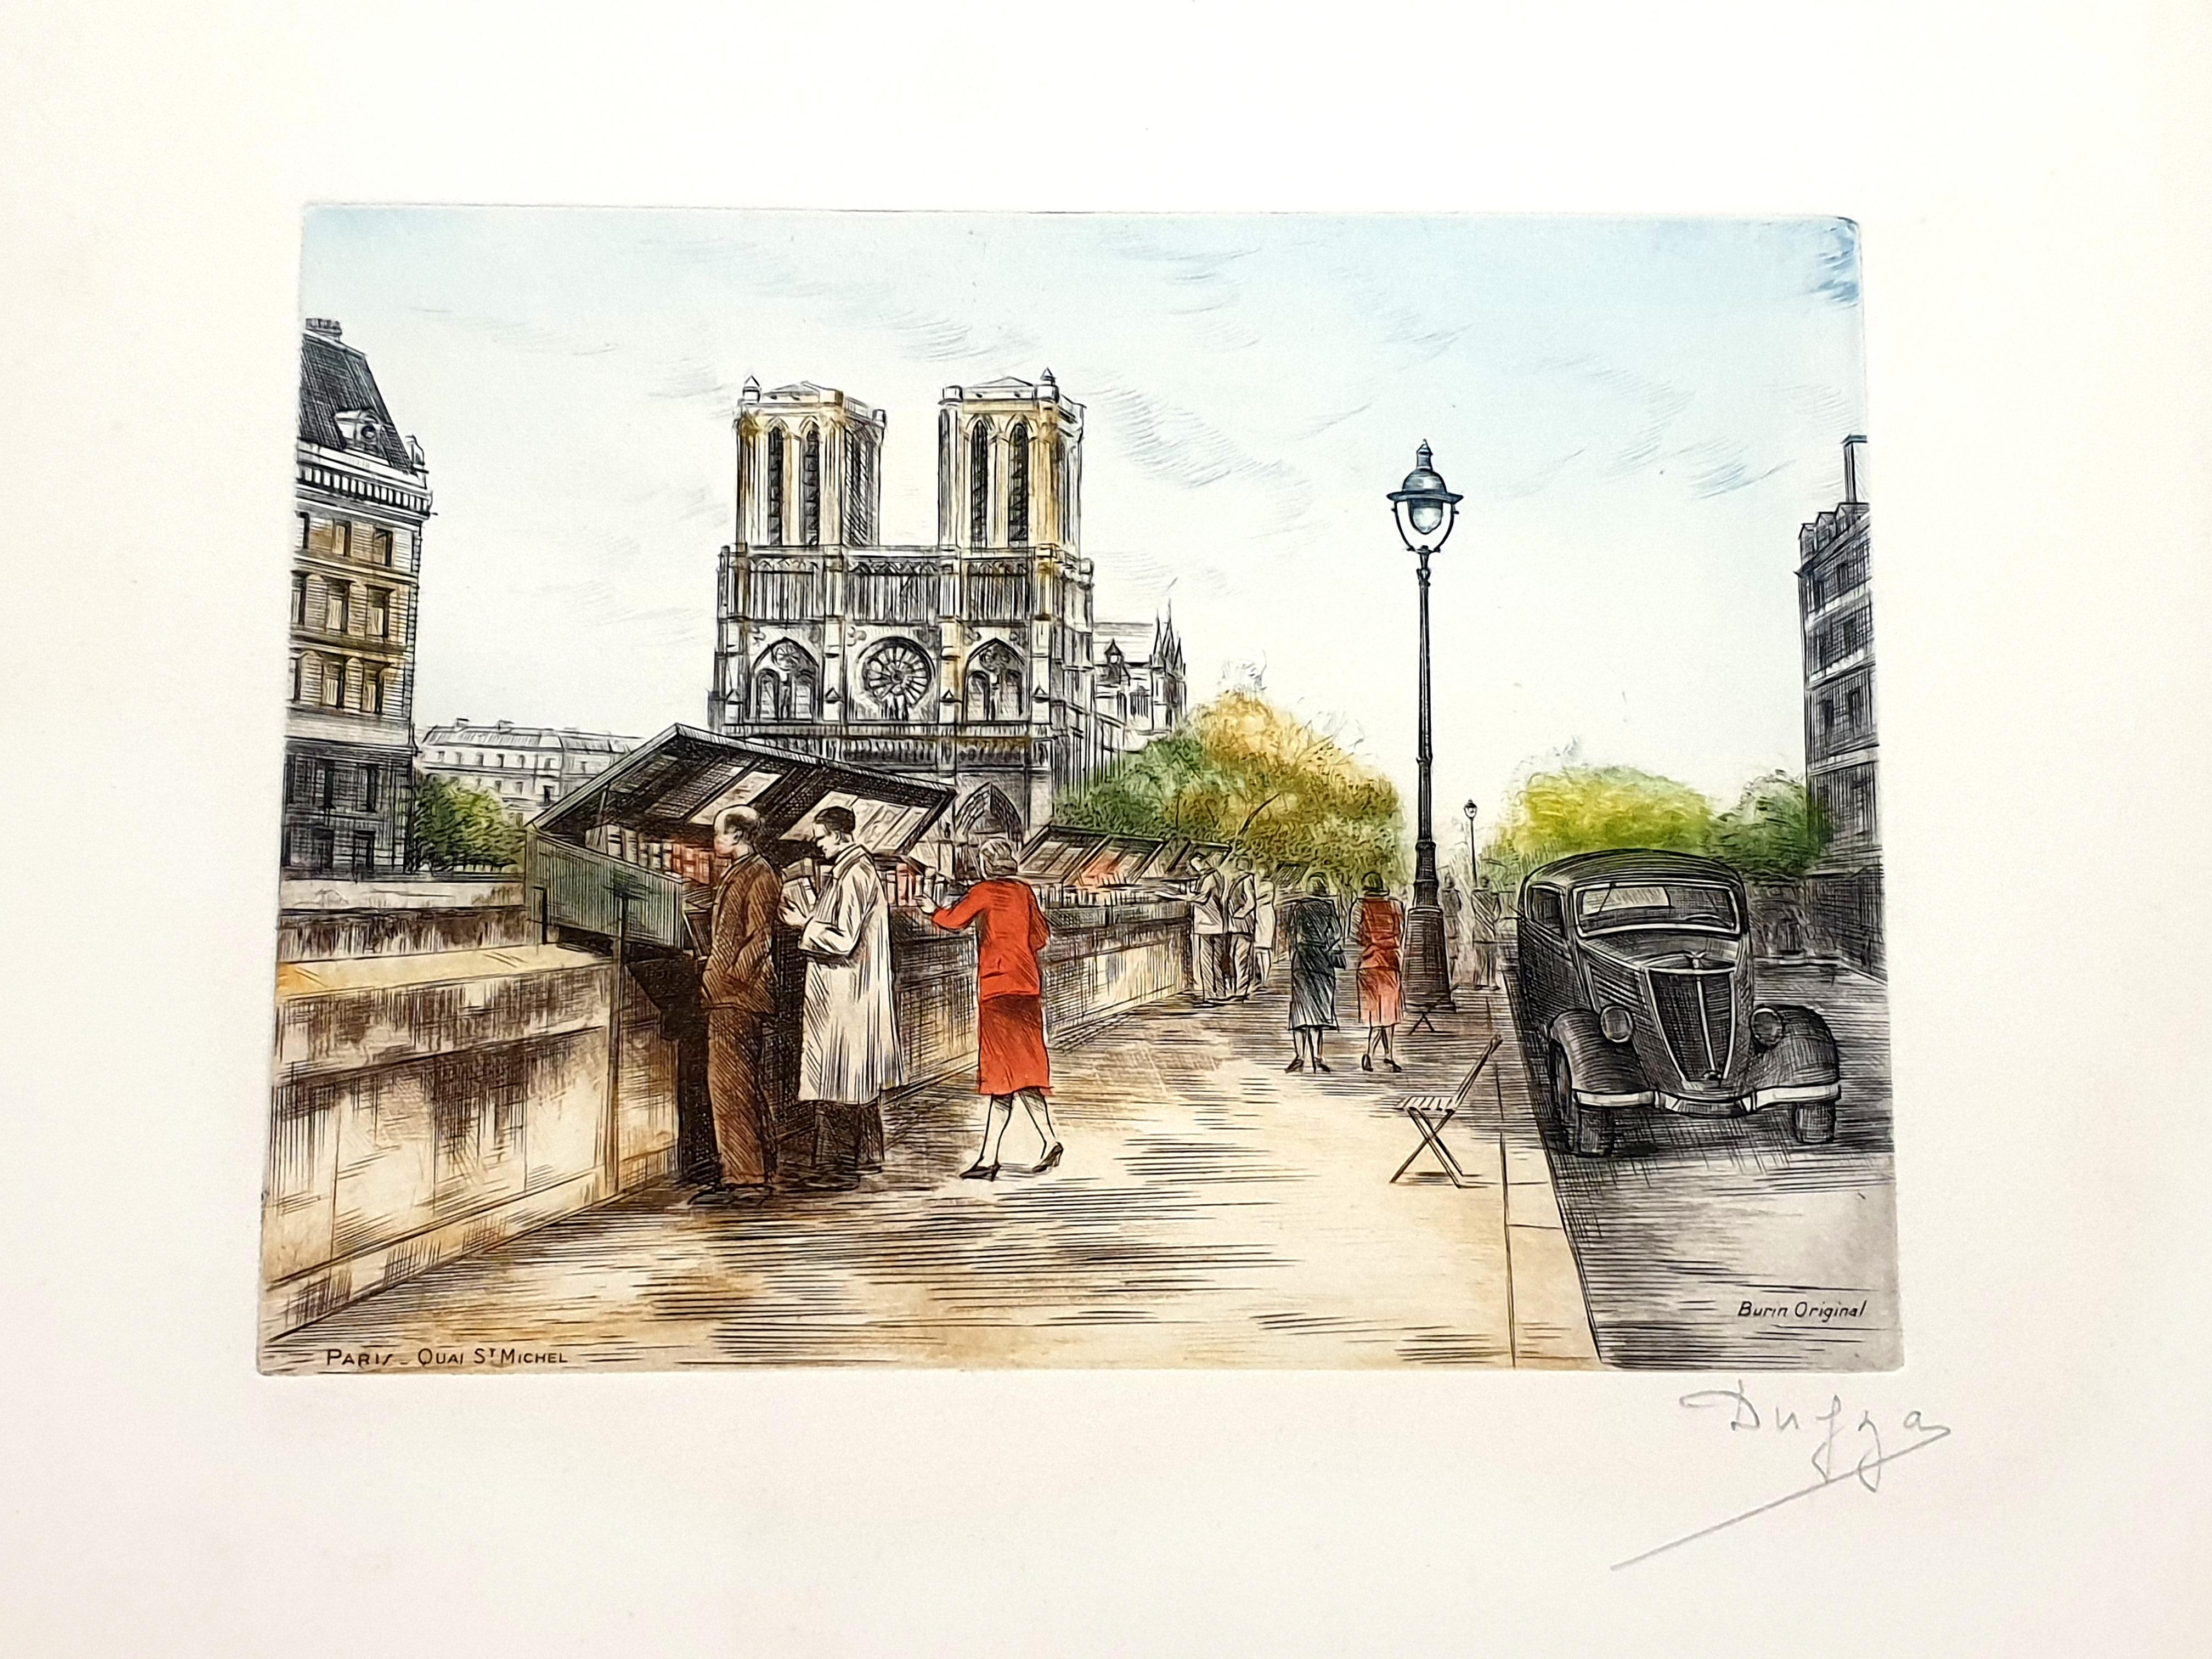 Dufza - Paris - Saint Michel - Original Handsignierte Radierung
CIRCA 1940
Handsigniert mit Bleistift
Abmessungen: 20 x 25 cm 
Unnummeriert wie ausgegeben 